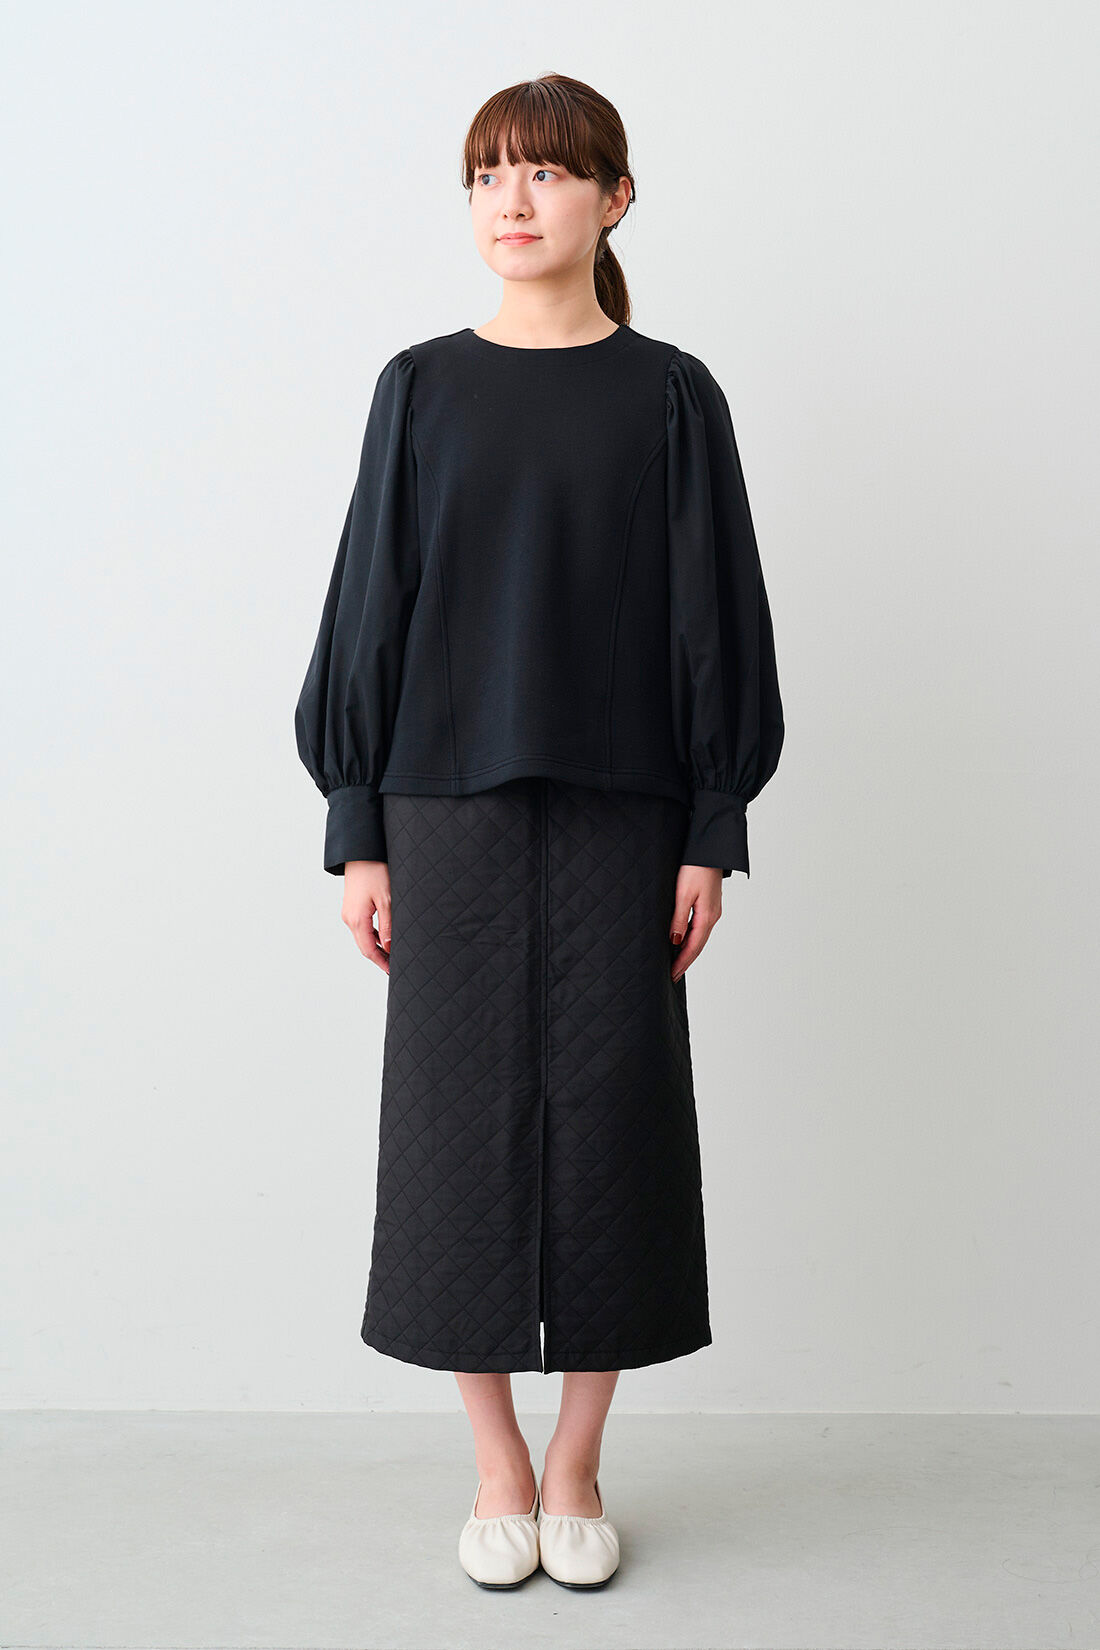 IEDIT[イディット]　小森美穂子さんコラボ ジャカードキルティング風素材ですっきり見えＩラインスカート〈ブラック〉|※着用イメージです。お届けするカラーとは異なります。 モデル身長：163cm 着用サイズ：M